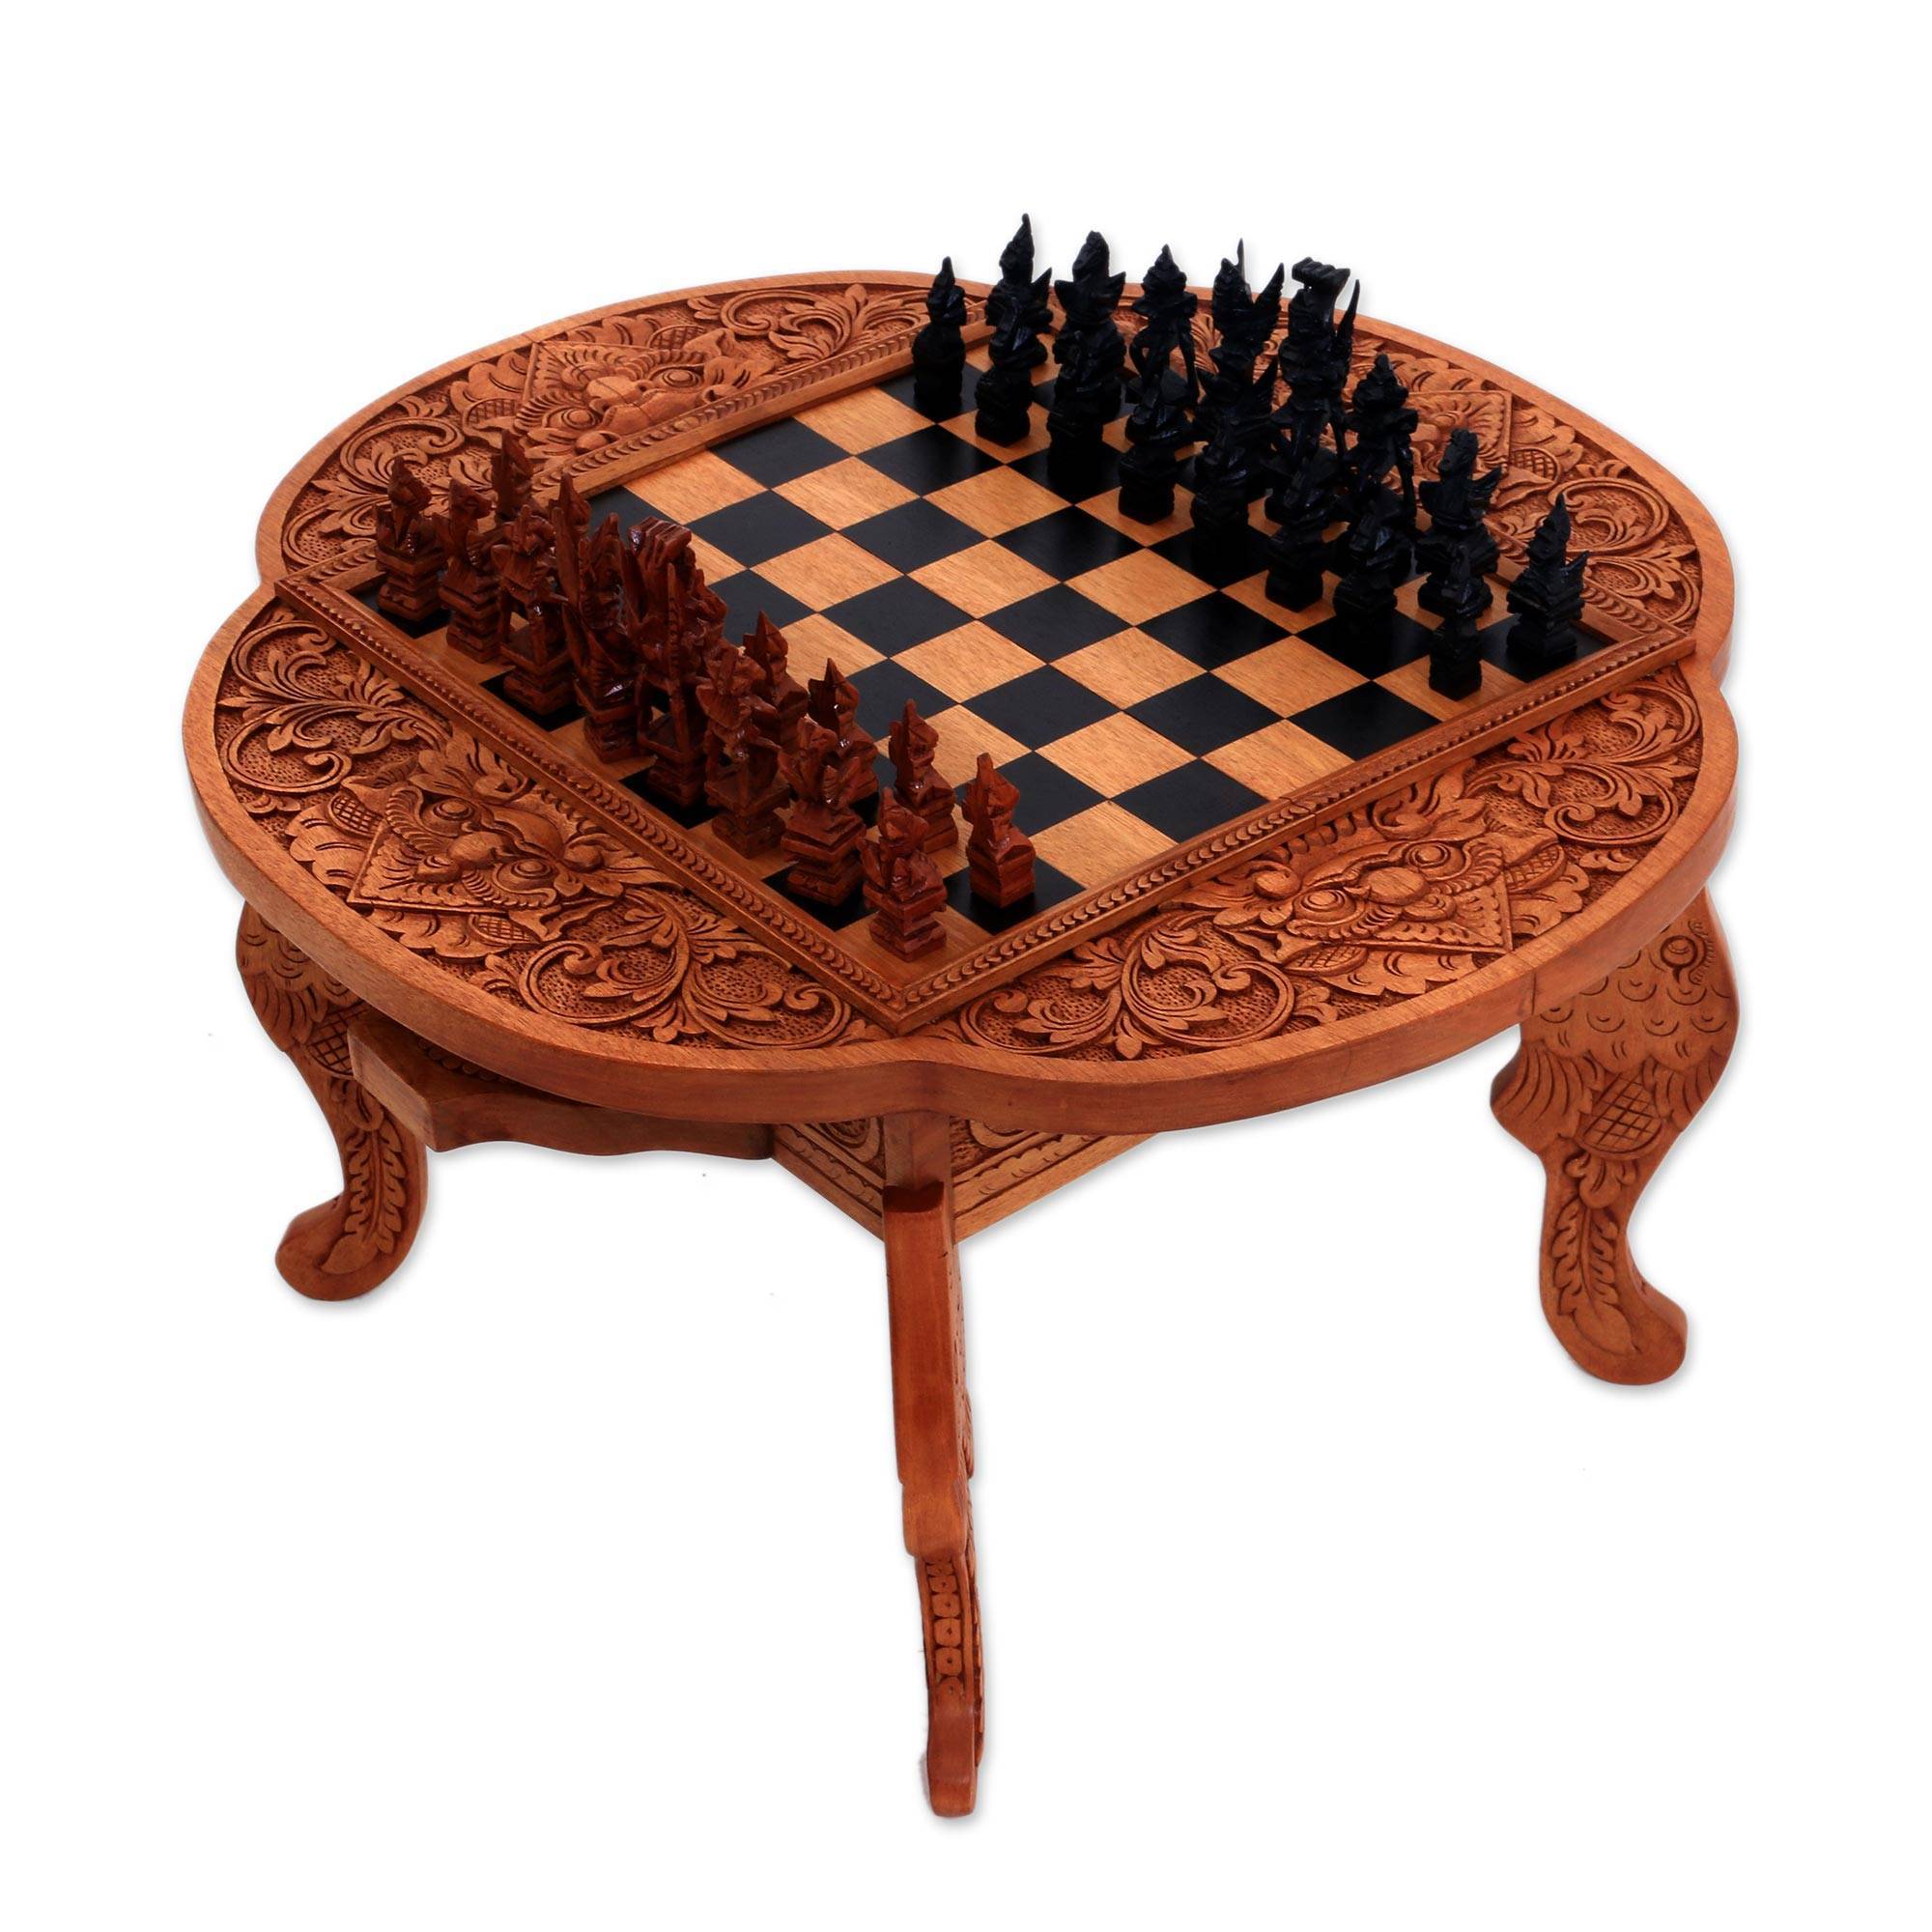 Paradise wood chess set kepalan wood -1